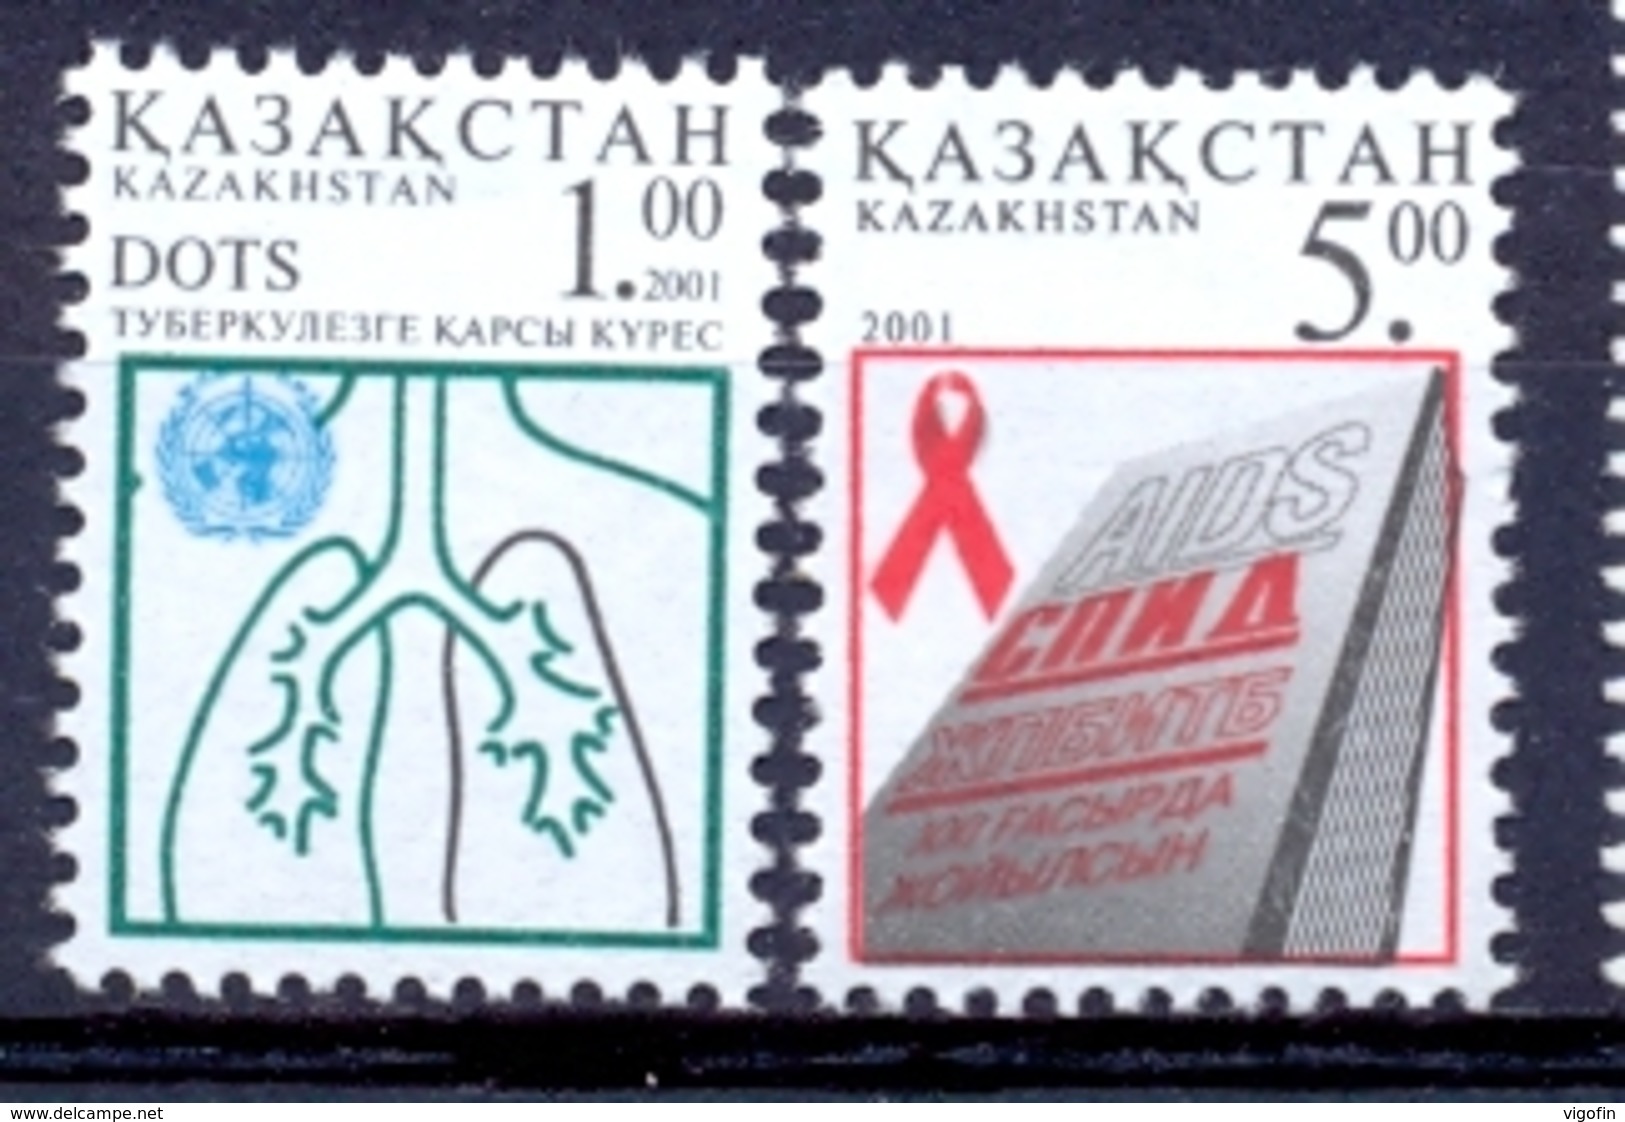 KZ 2001-338-9 Against Aids, KAZAKISTAN, 1 X 2v, MNH - Kasachstan